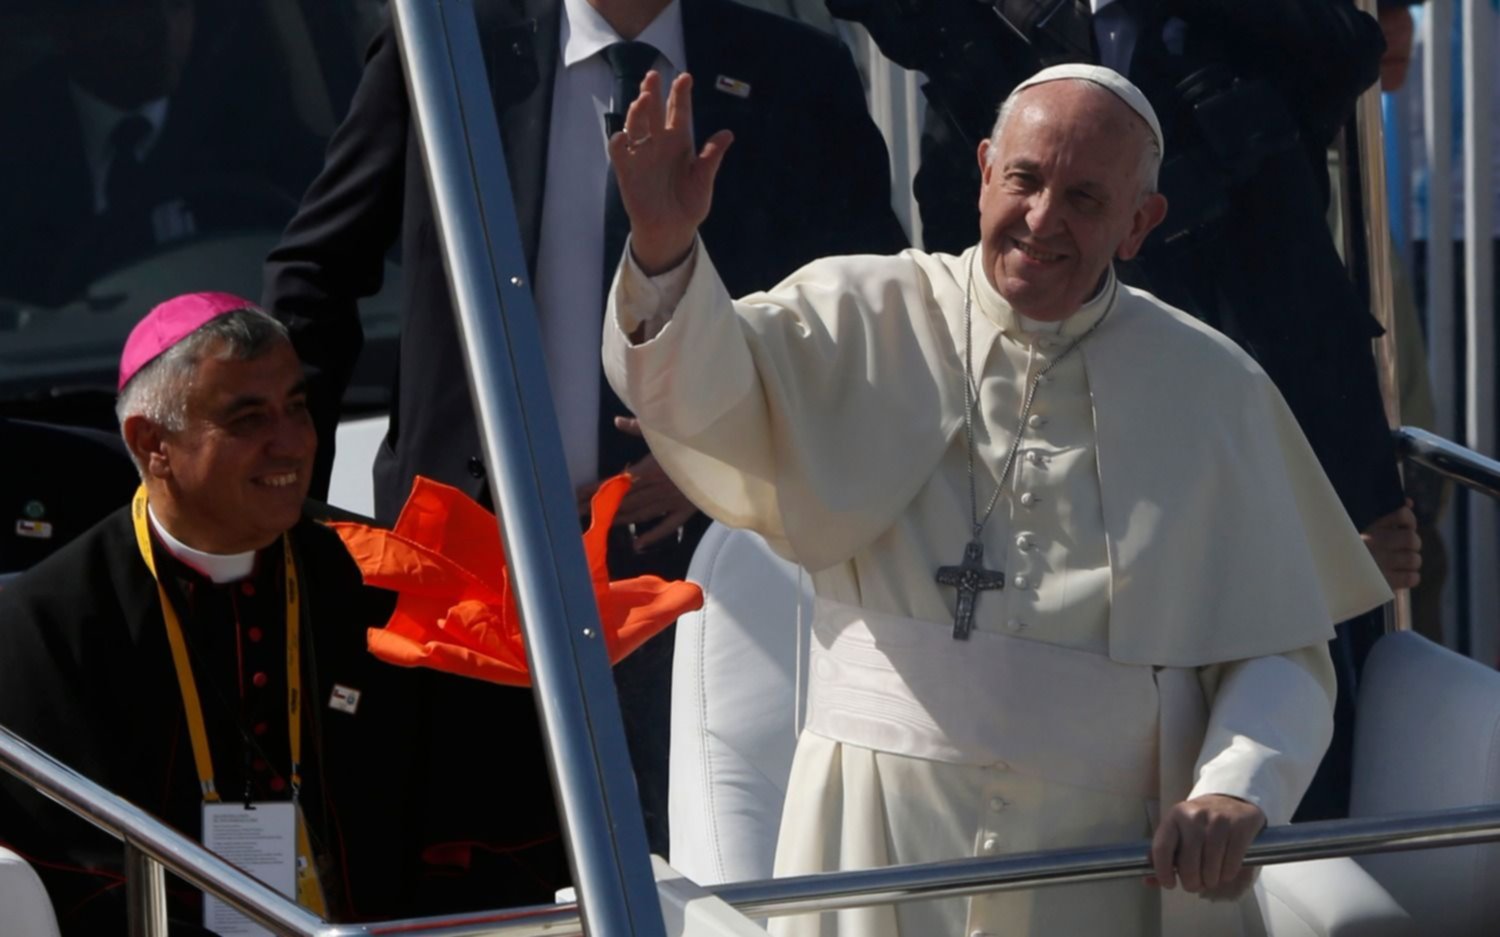 El Papa defendió al obispo chileno acusado de encubrir casos de abusos sexuales